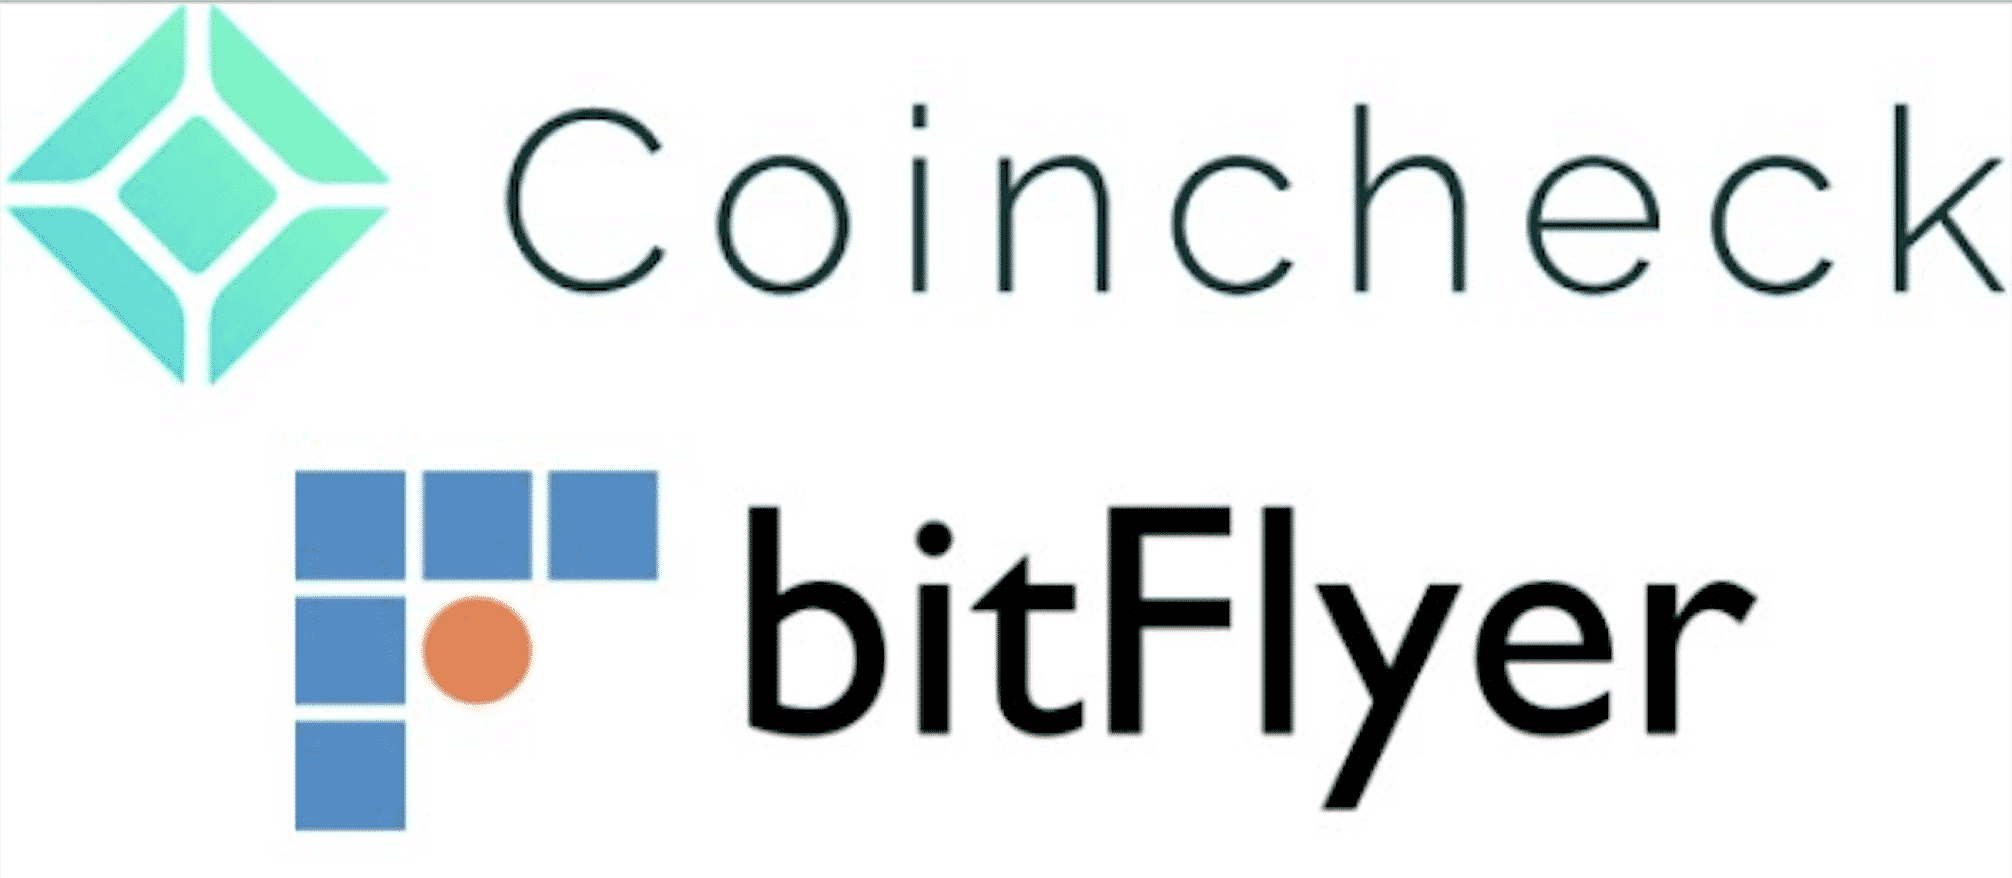 bitFlyer（ビットフライヤー）とcoincheck（コインチェック）を徹底比較